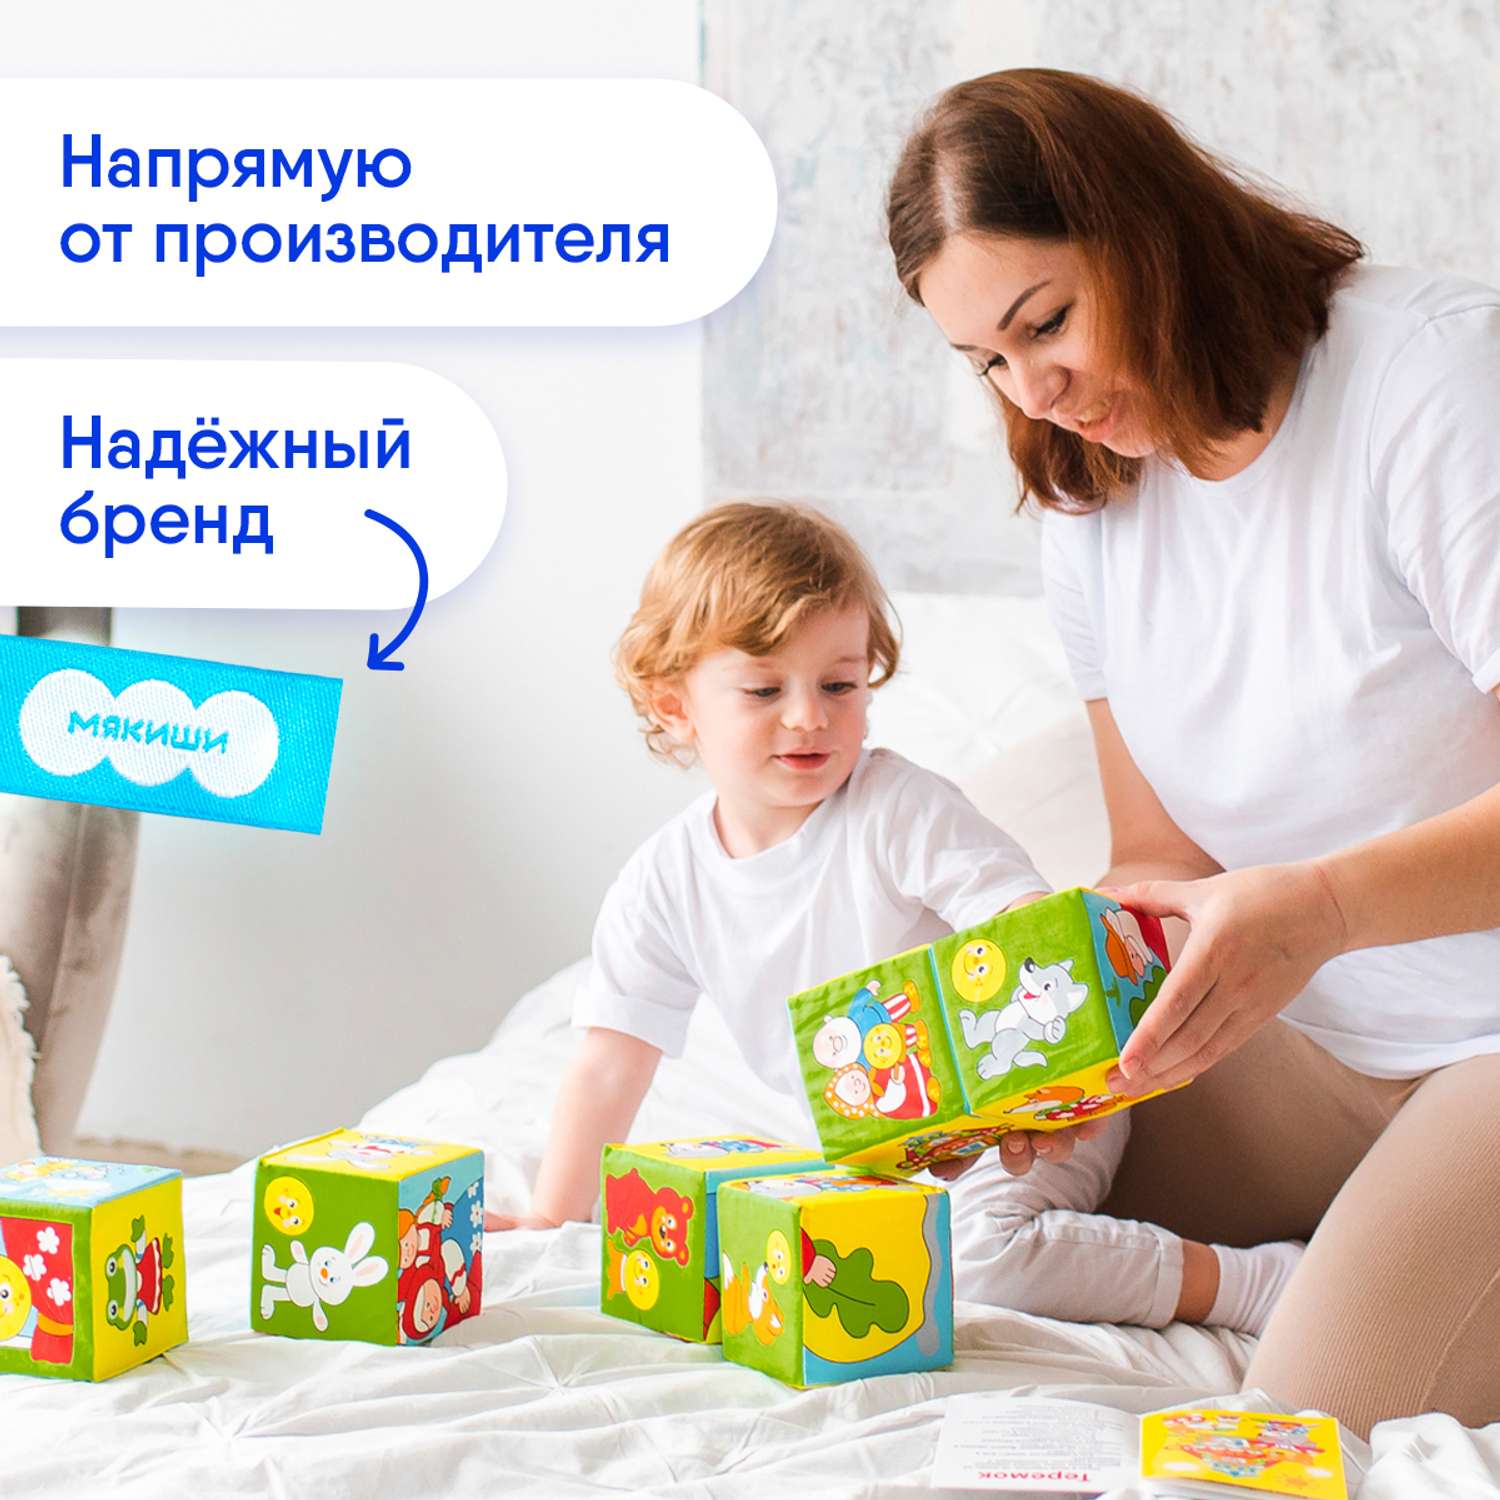 Кубики Мякиши Мягкие детские с буквами развивающие для детей Русские сказки подарок игра развитие детям - фото 5